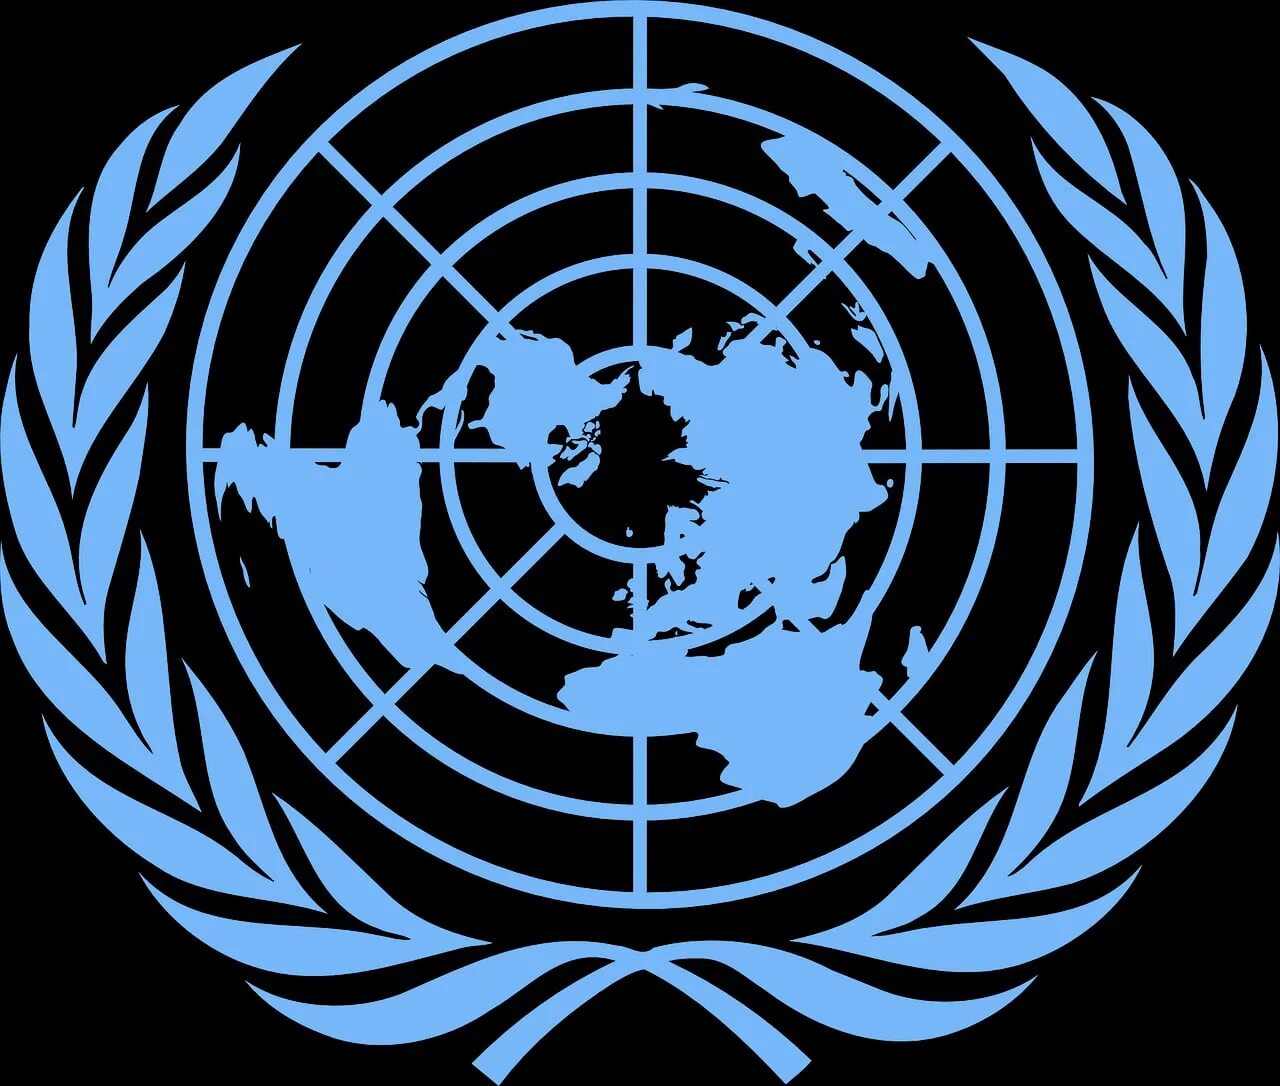 Конвенция бомбовый терроризм. ООН United Nations. Генеральная Ассамблея ООН логотип. Знак совета безопасности ООН. Совбез ООН знак.